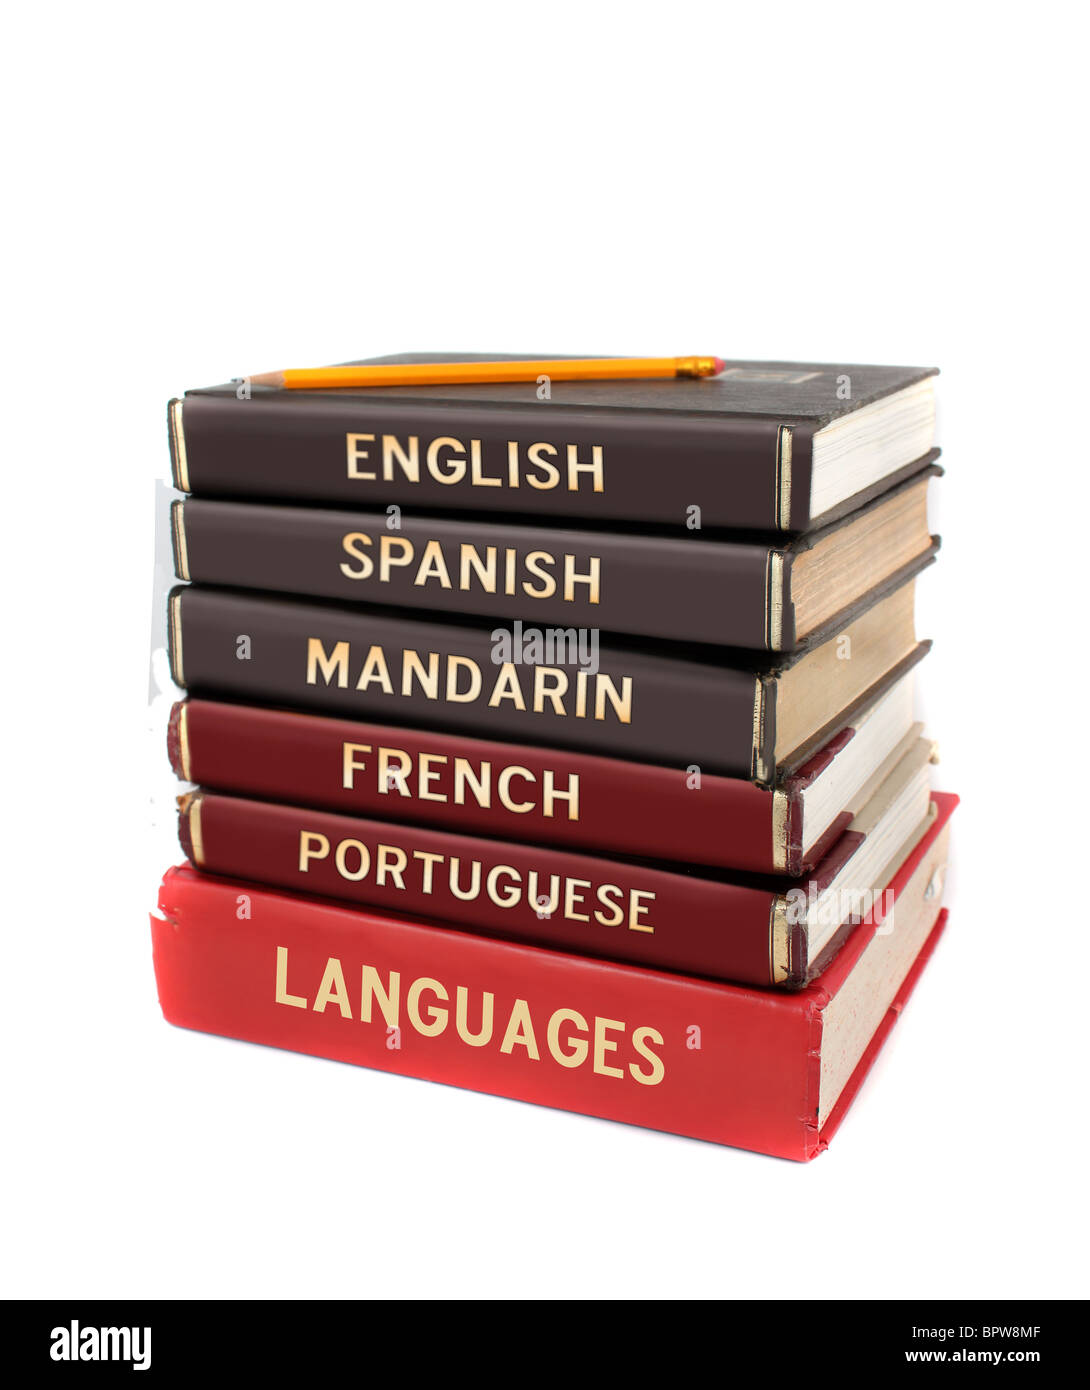 Lehrbücher für Sprachen wie Englisch, Spanisch, Mandarin, Französisch und Portugiesisch für pädagogische Zwecke Stockfoto